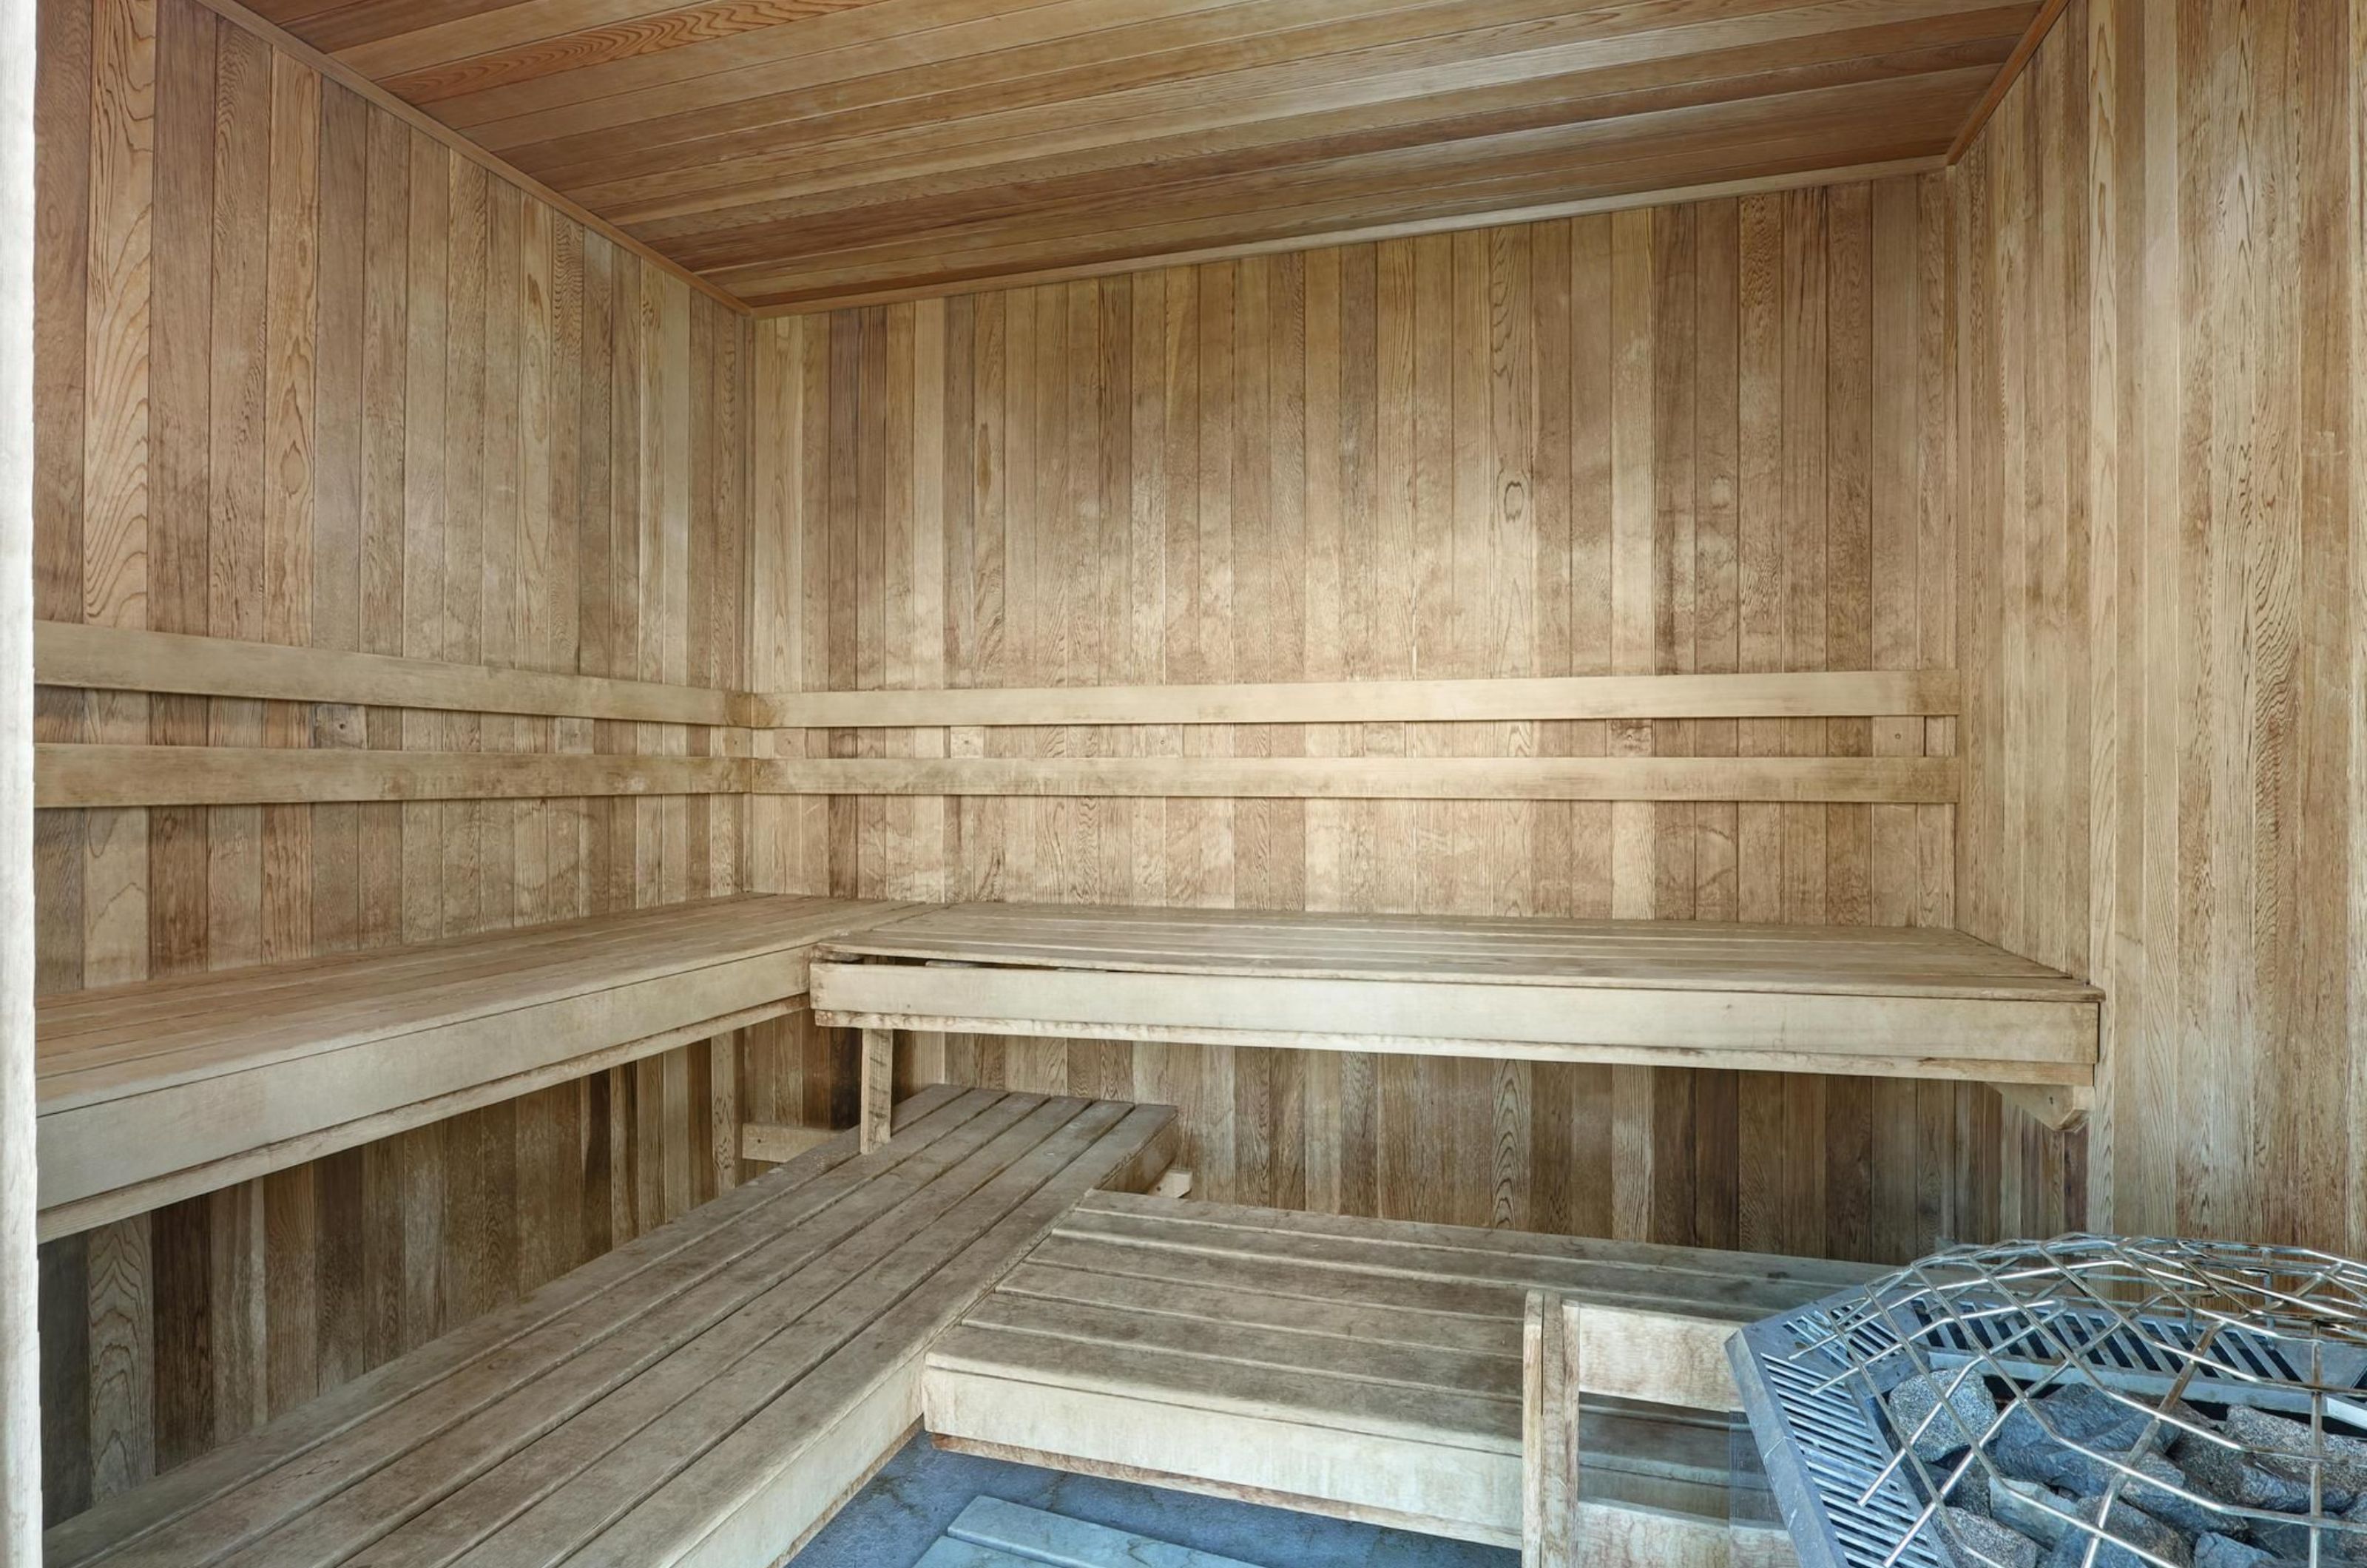 The sauna at Lighthouse Condominiums